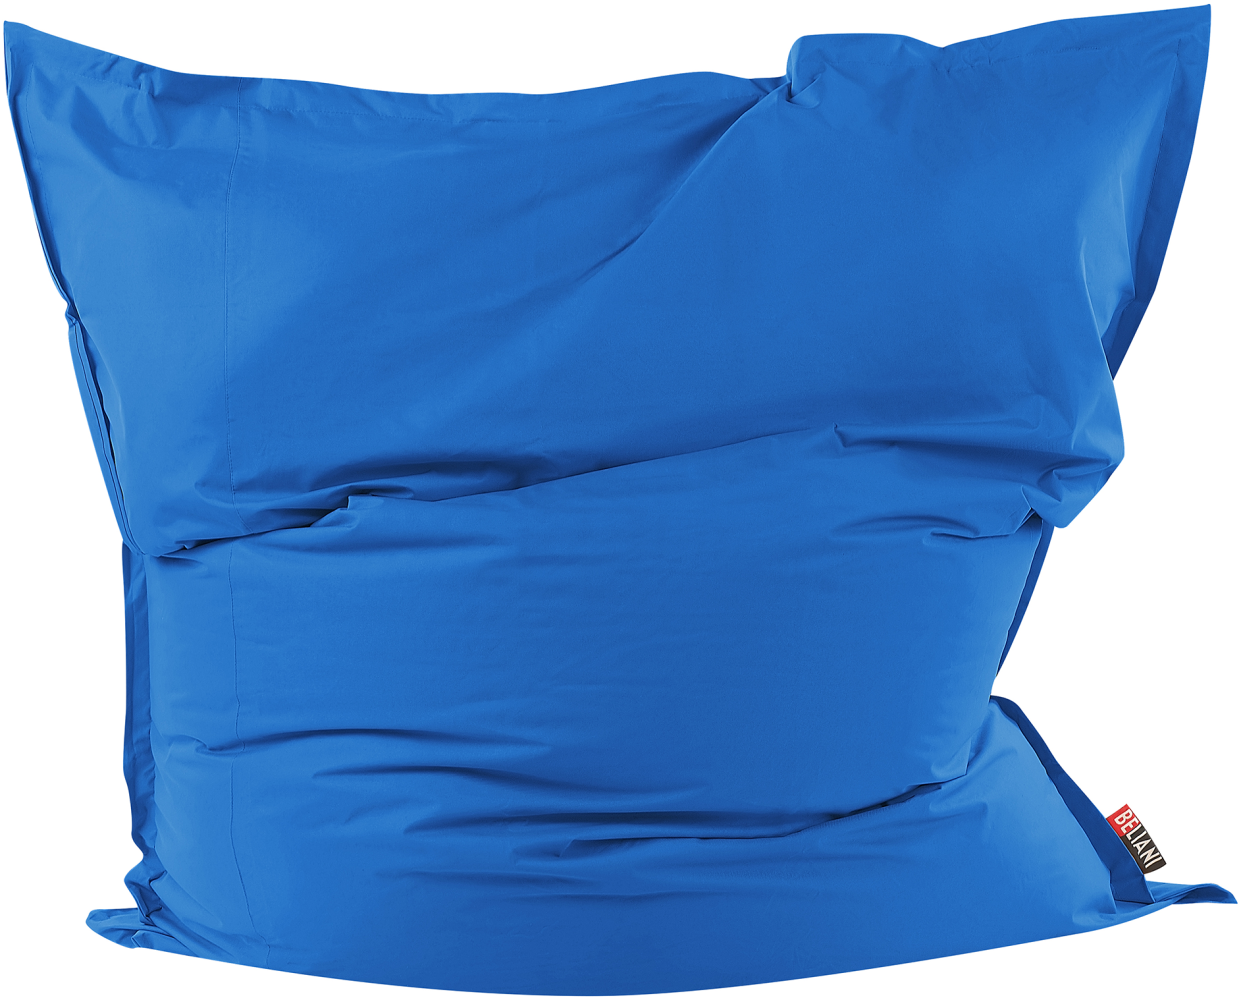 Sitzsack mit Innensack für In- und Outdoor 180 x 230 cm marineblau FUZZY Bild 1